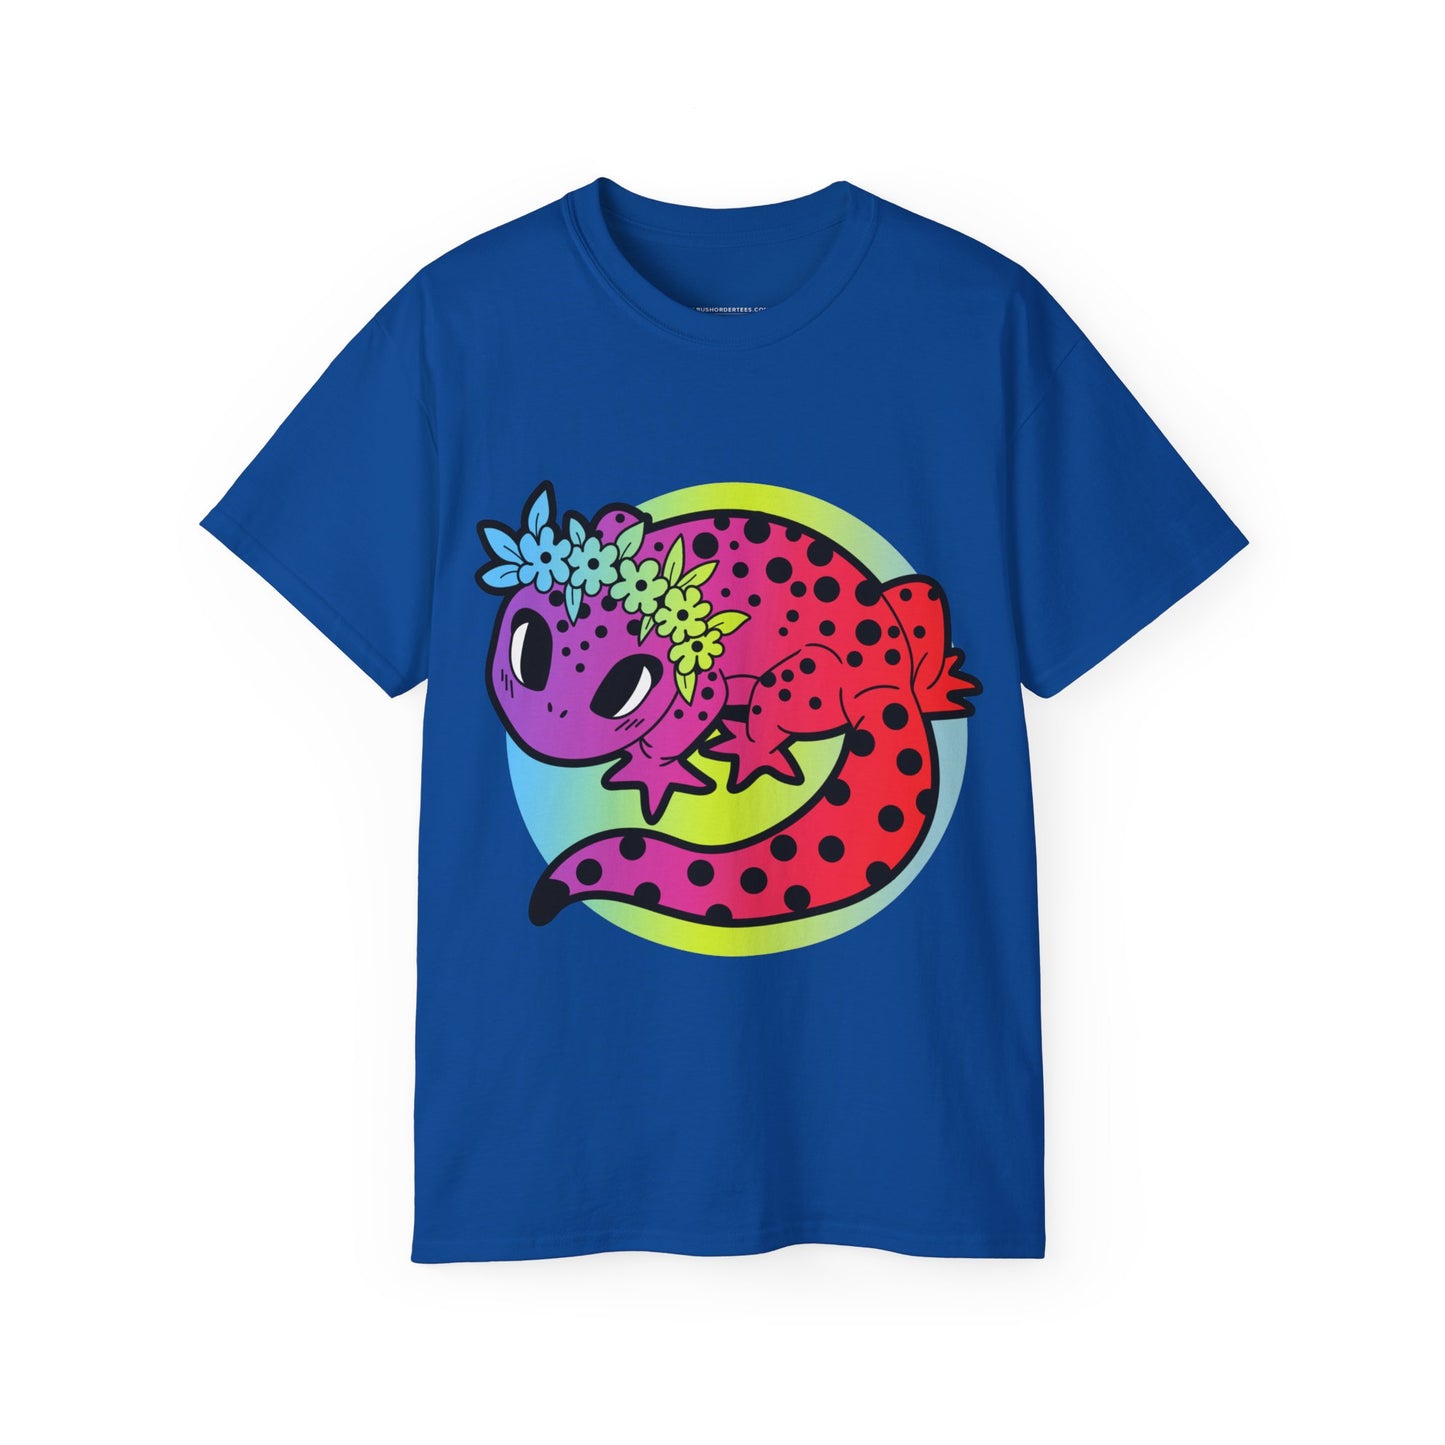 Rainbow Lizard T-shirt